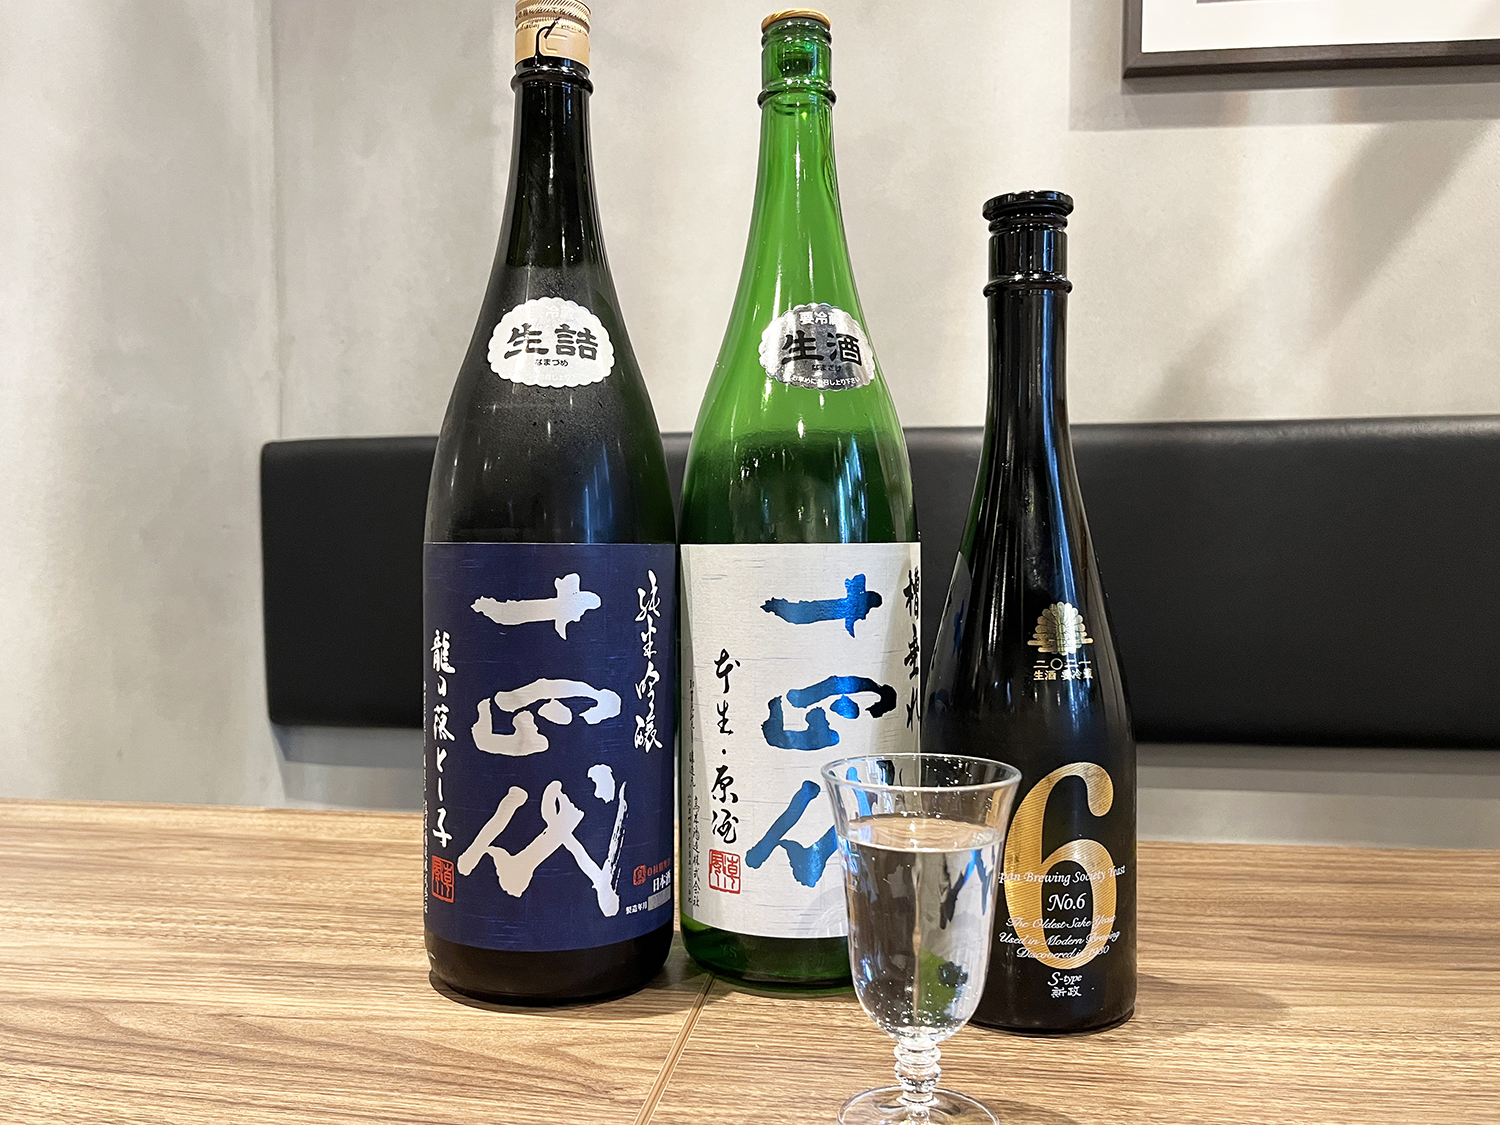 幻の日本酒として有名な銘酒が揃う。左から山形・高木酒造の十四代 龍の落とし子、同じく十四代 槽垂れ本生原酒、秋田・新政酒造のNo.6 S-Type。